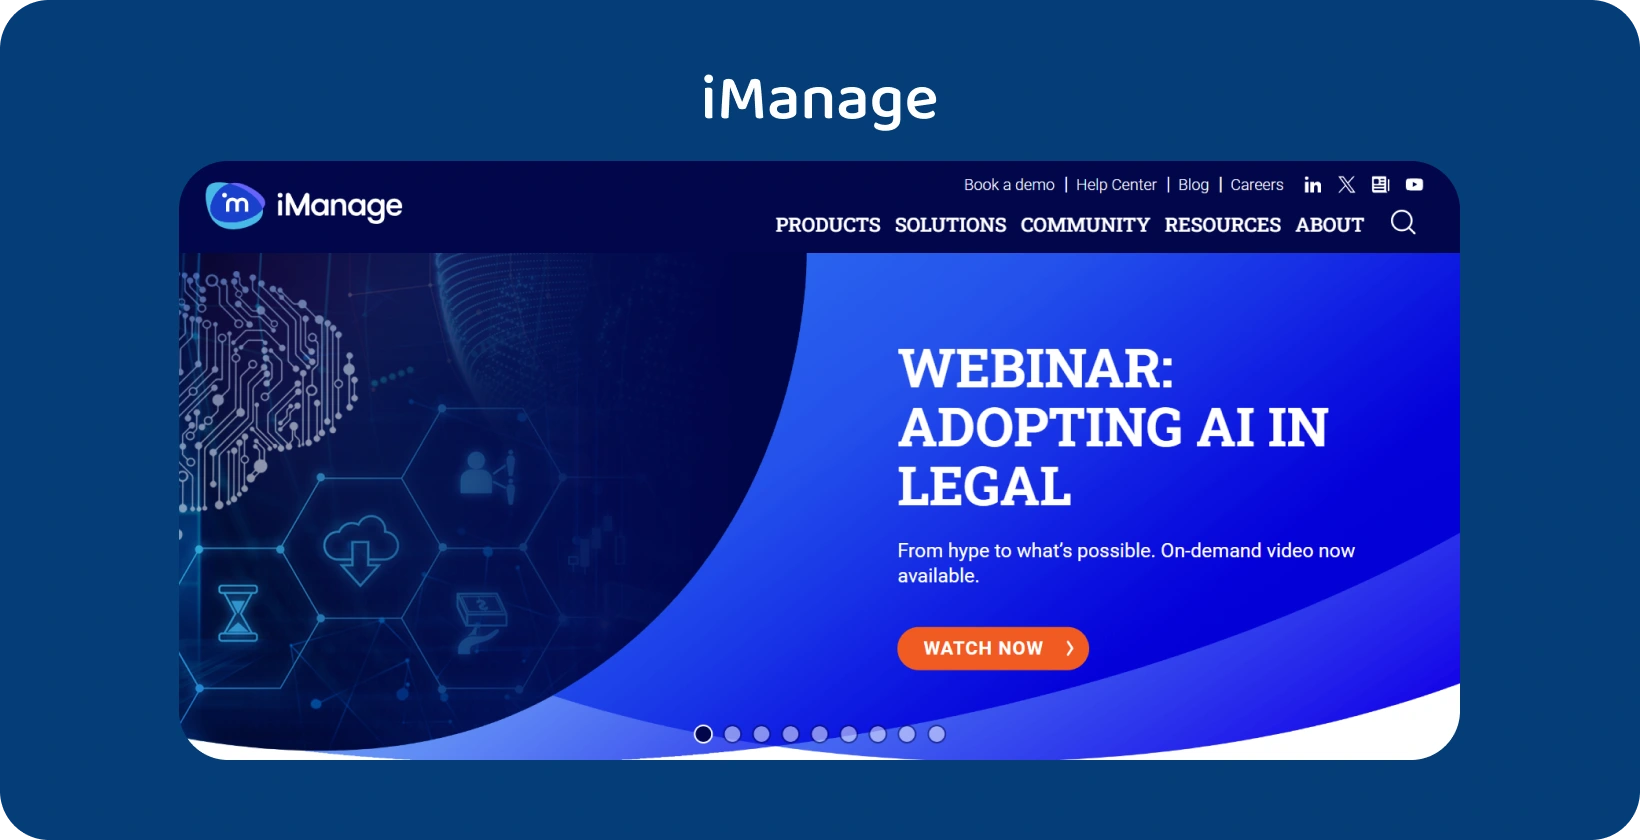 iManage platformu koja pospešuje sofisticirano upravljanje pravnim zapisima i besprekorne procese automatizacije.